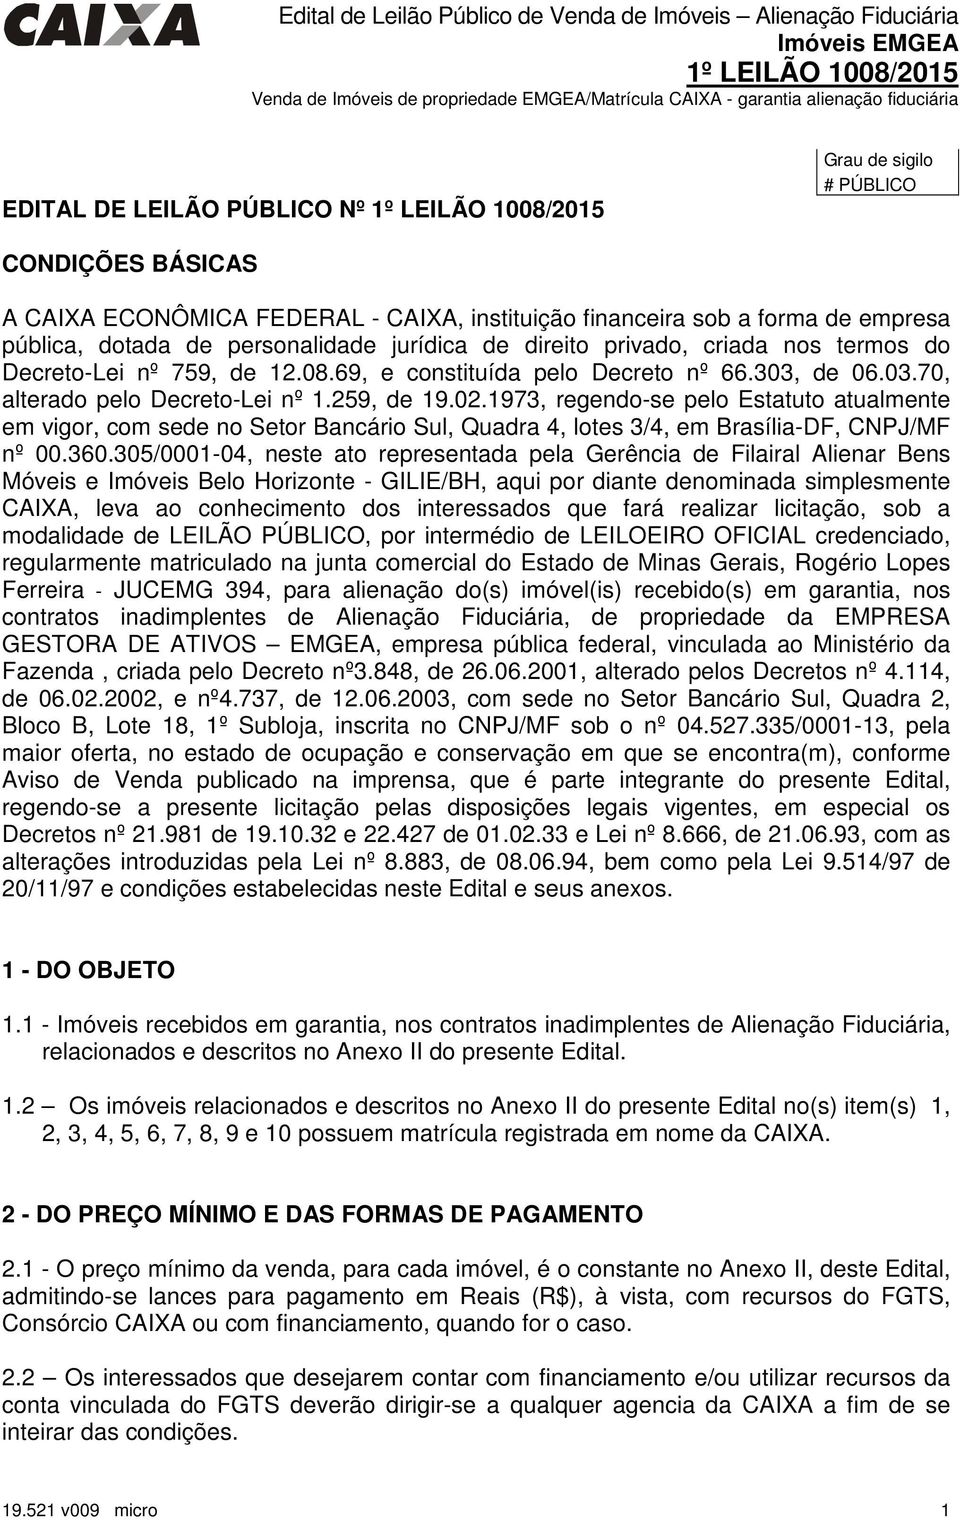 1973, regendo-se pelo Estatuto atualmente em vigor, com sede no Setor Bancário Sul, Quadra 4, lotes 3/4, em Brasília-DF, CNPJ/MF nº 00.360.